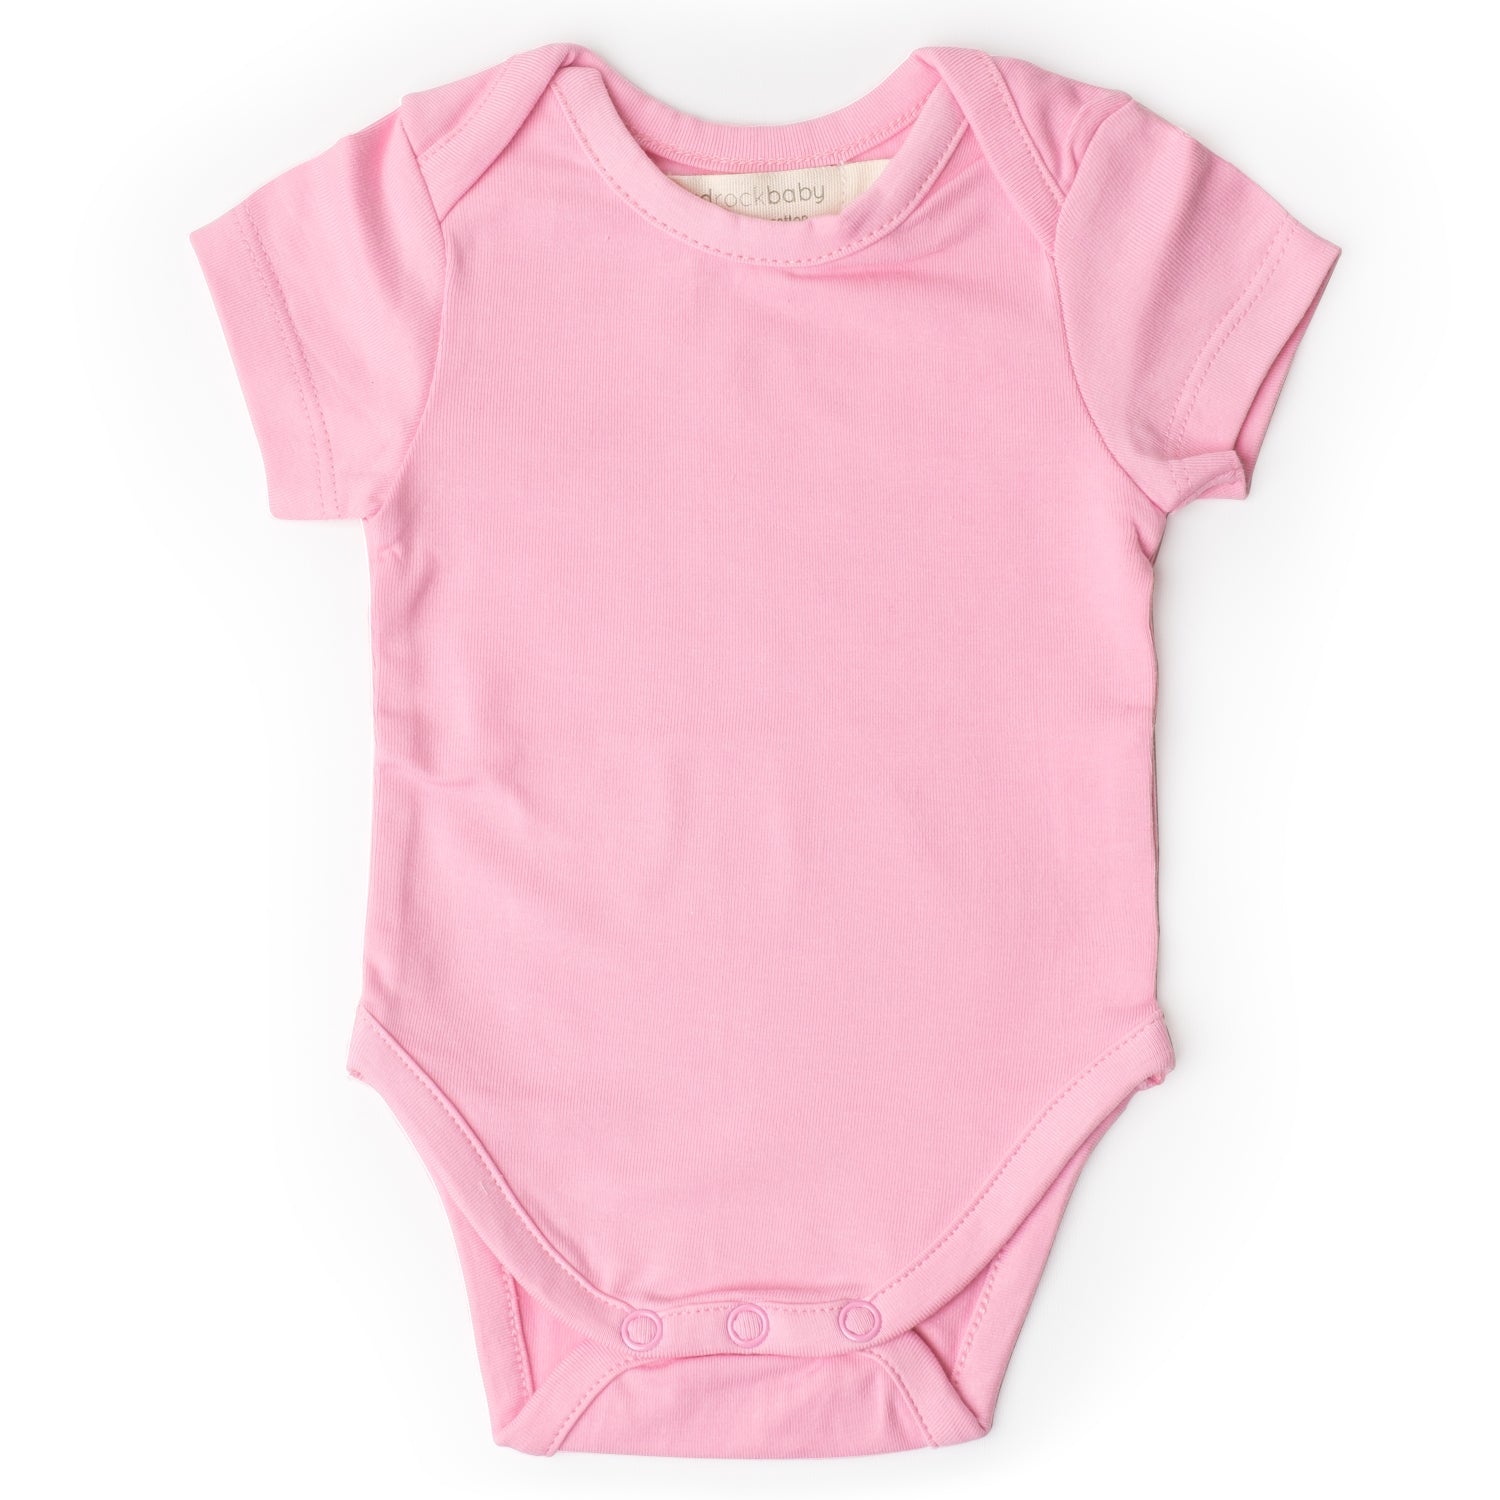 Size kids /Bodysuit Extender Film Adjustable Length Cotton - Pink, as  described 